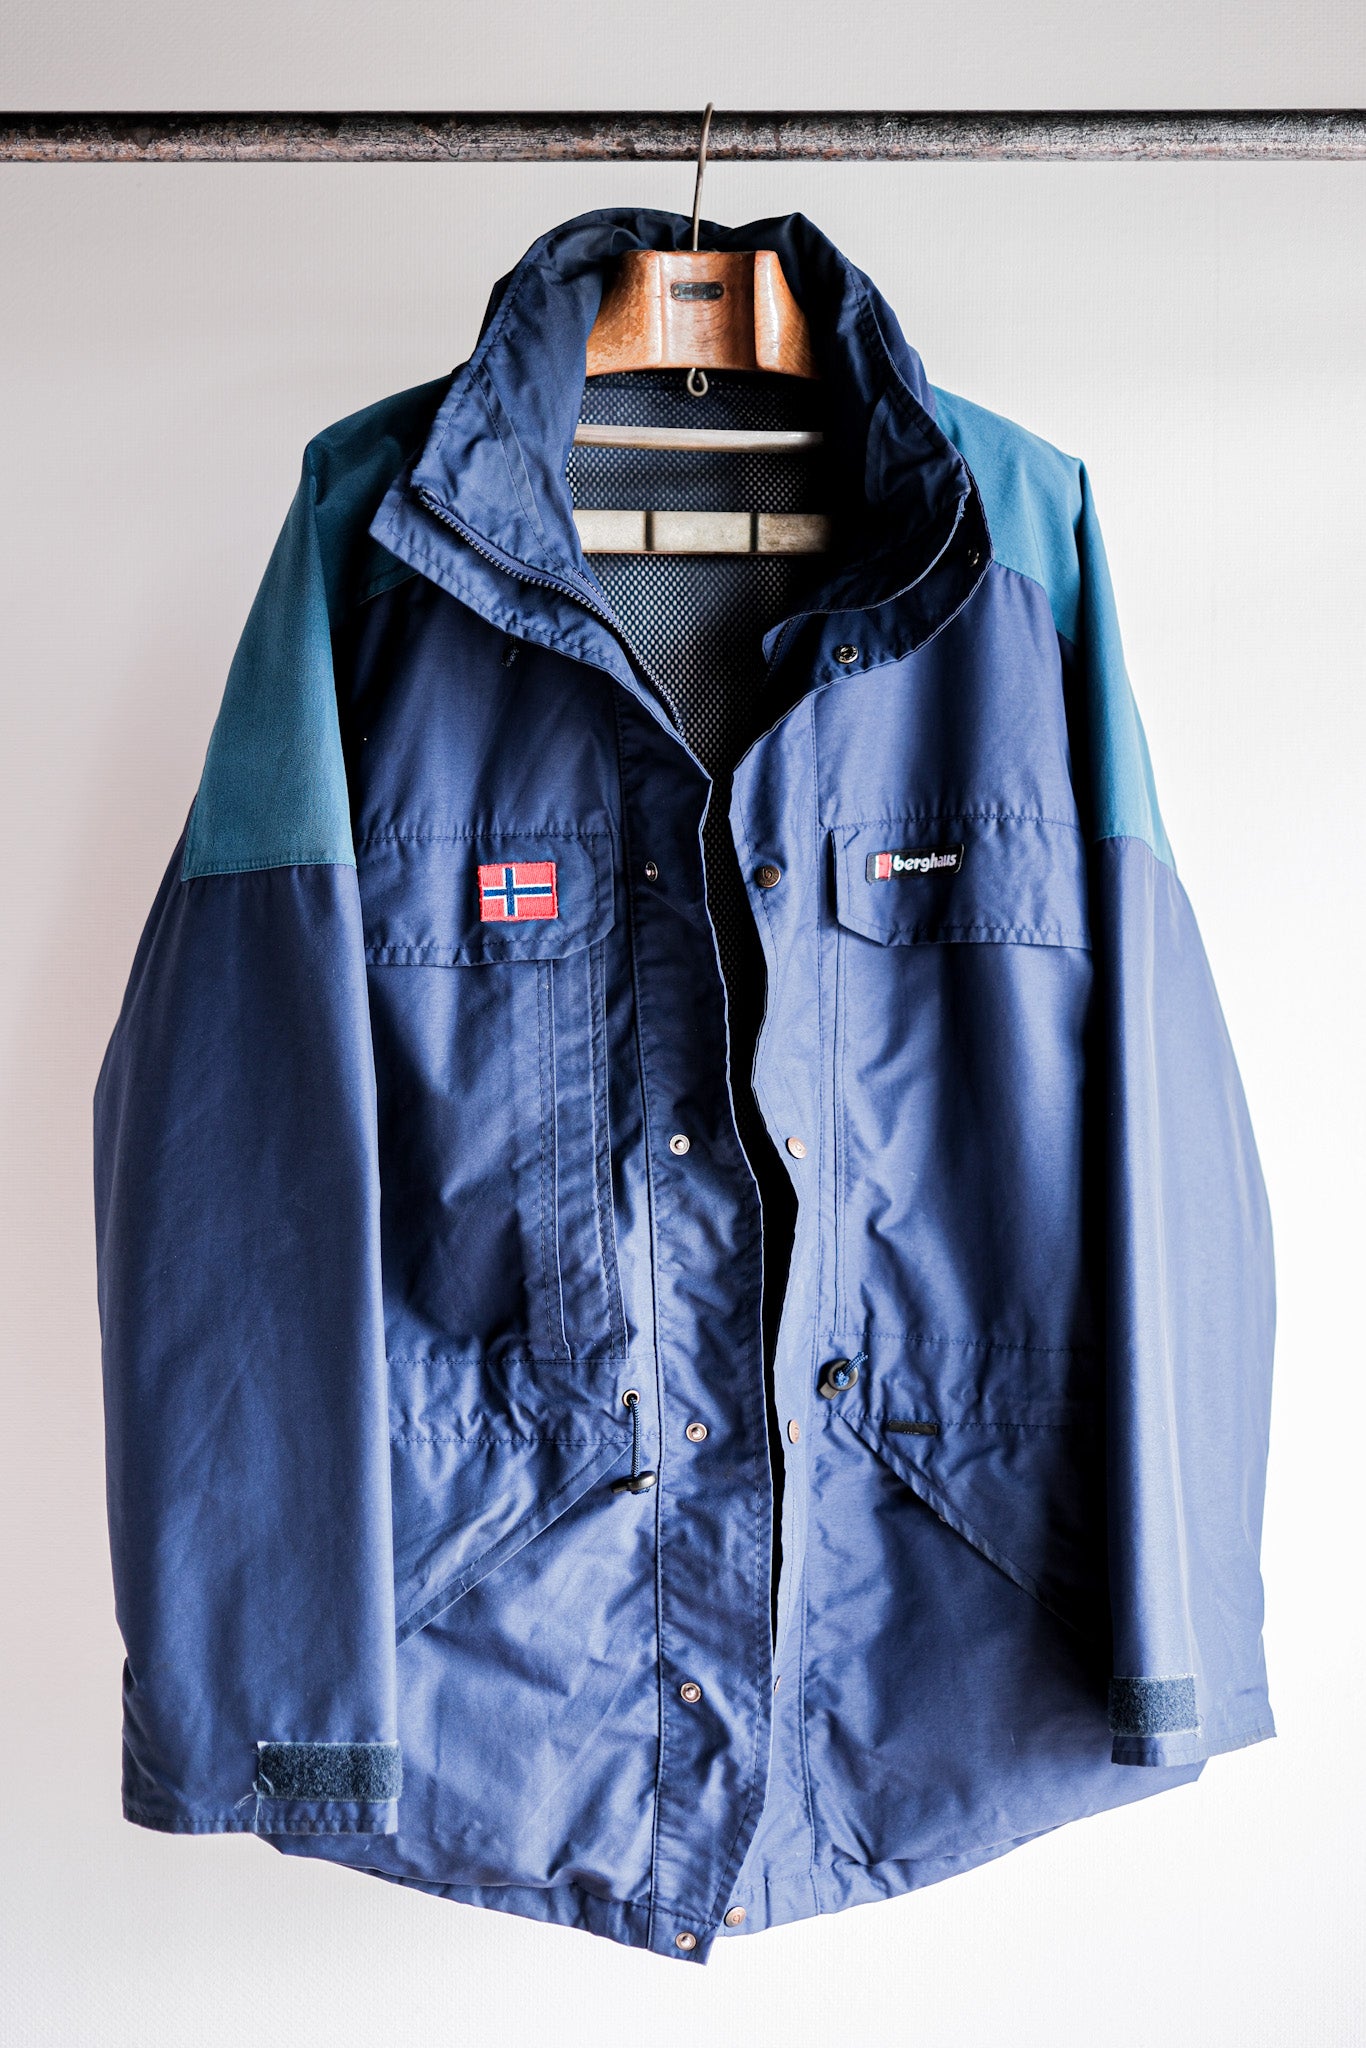 【~90's】Vintage Berghaus GORE-TEX Hiking Jacket Size.Large